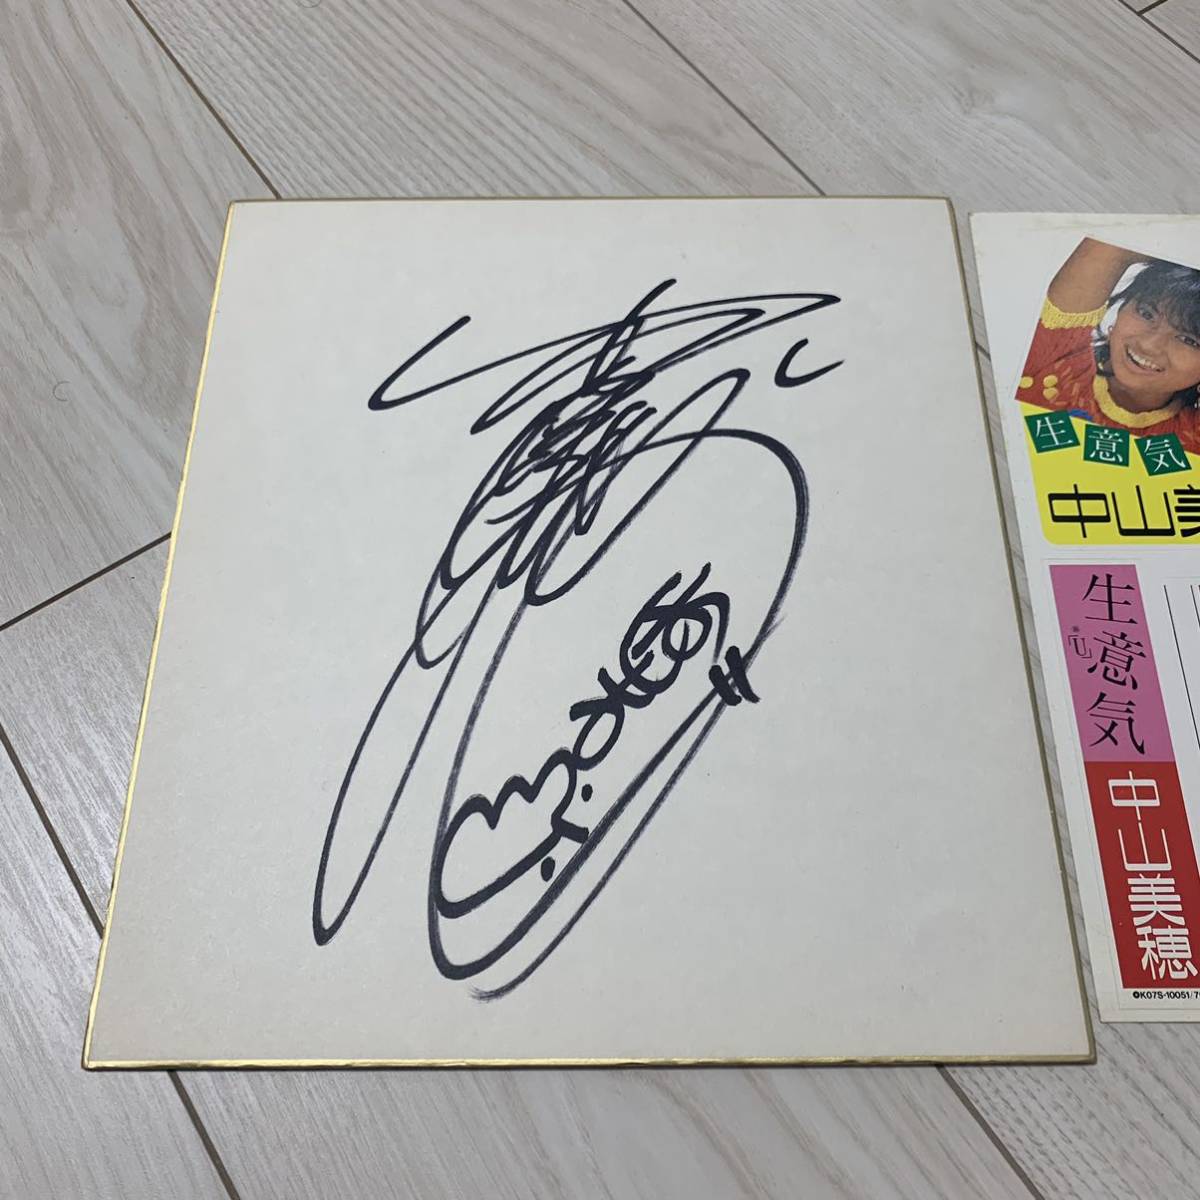 मिहो नाकायमा ने स्टिकर के साथ रंगीन कागज पर हस्ताक्षर किया, प्रतिभा का माल, संकेत